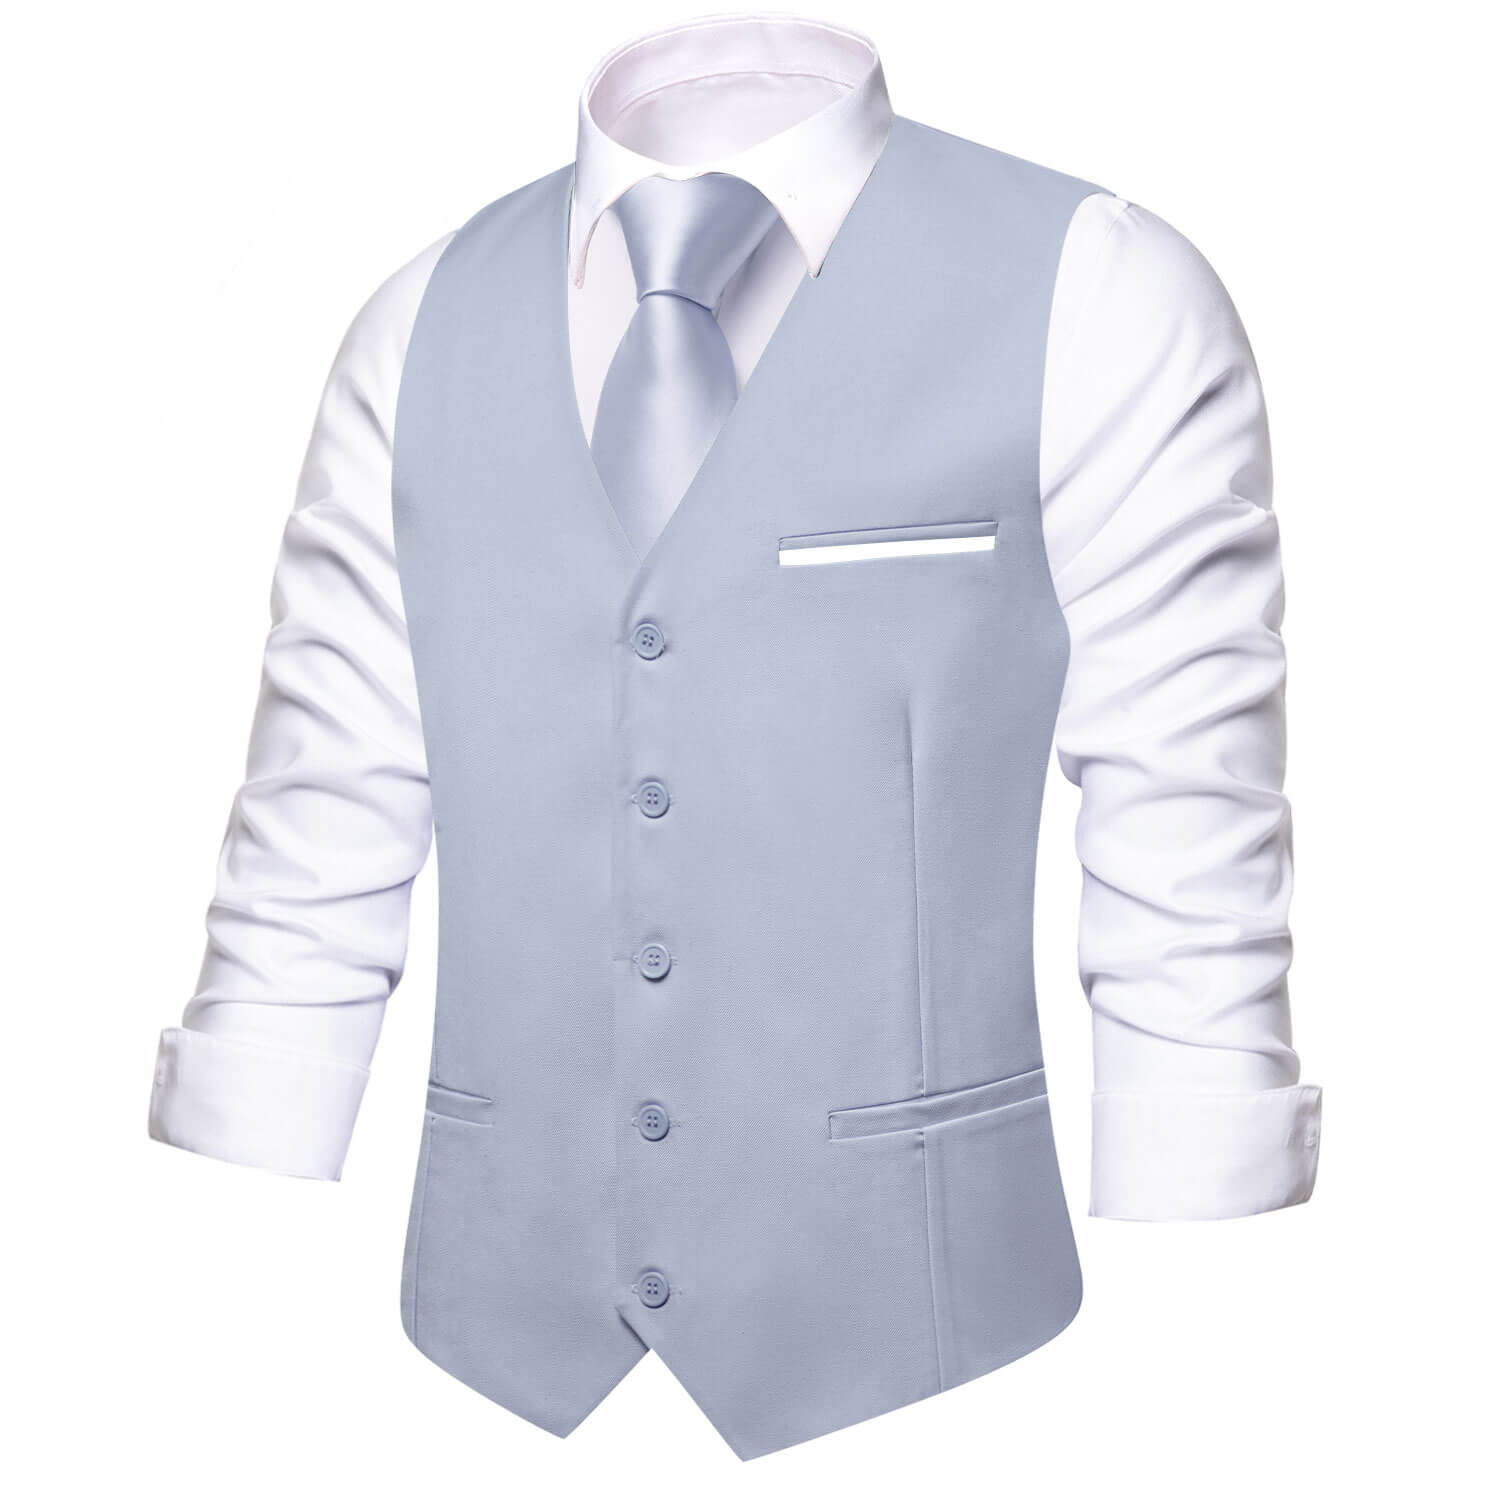 Hi-Tie Men's Work Vest Gray Blue Solid Silk Vest Business Waistcoat